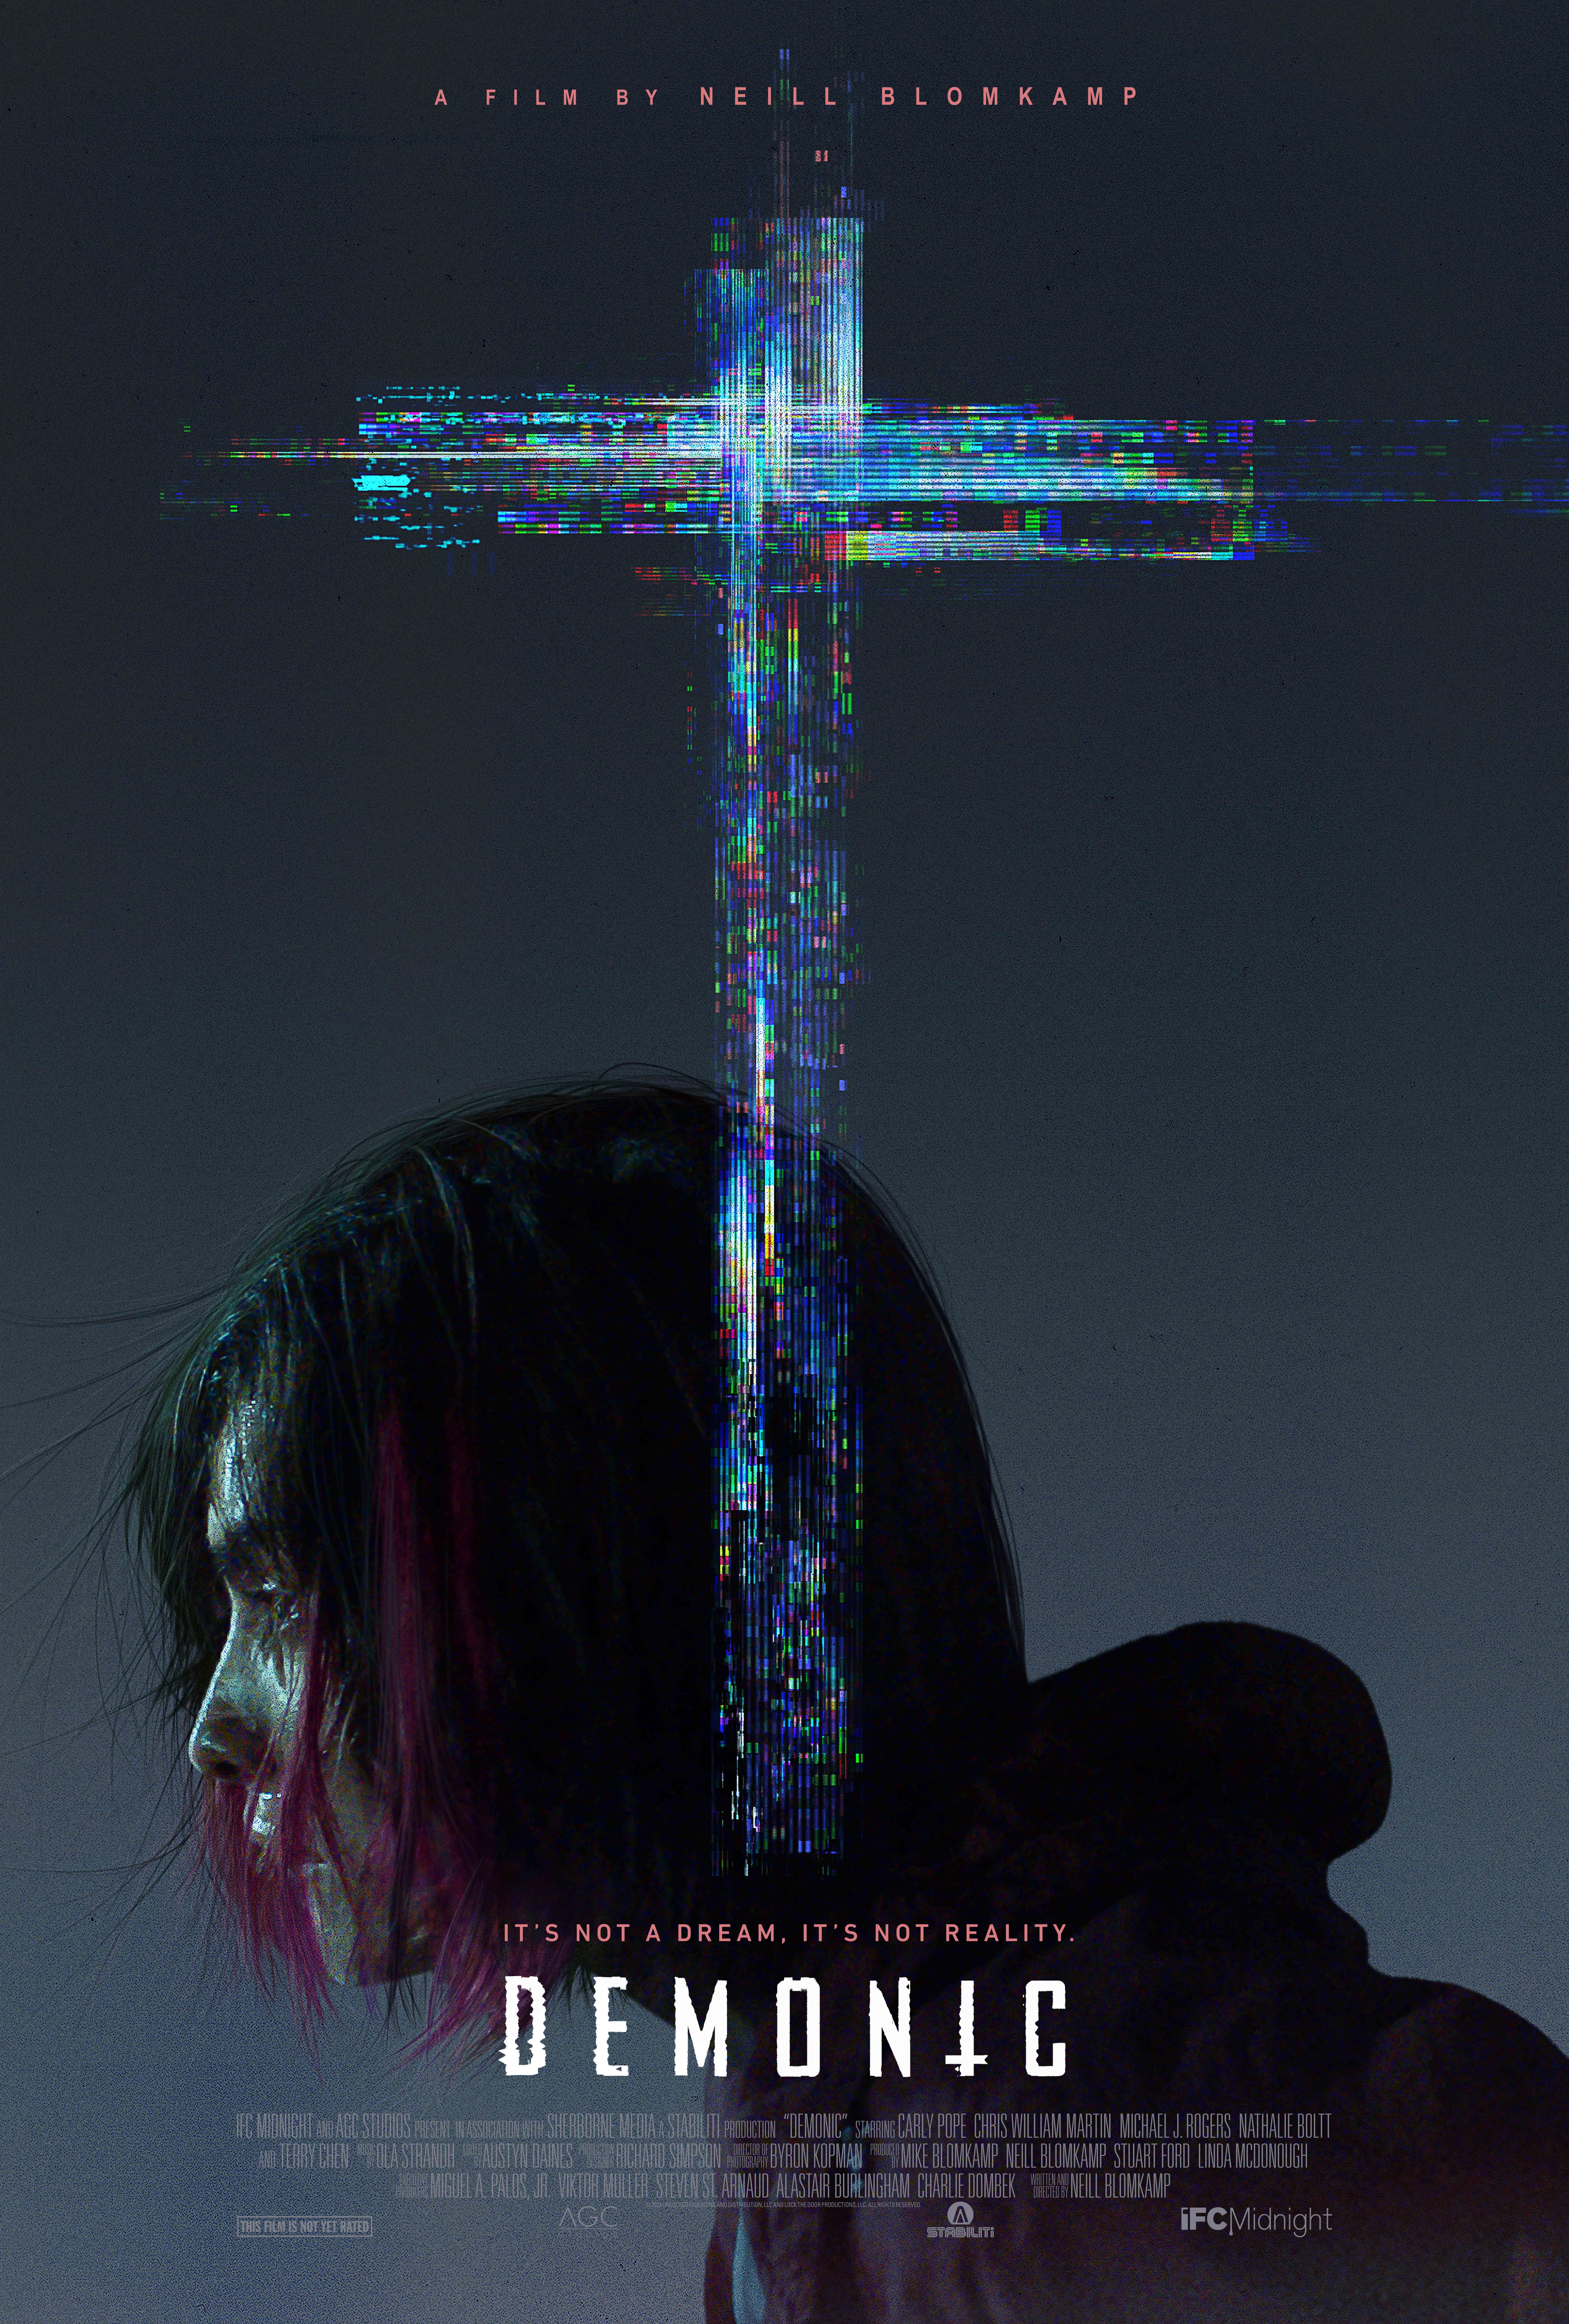 Demonic: New Poster For Neill Blomkamp Horror Film Debuts